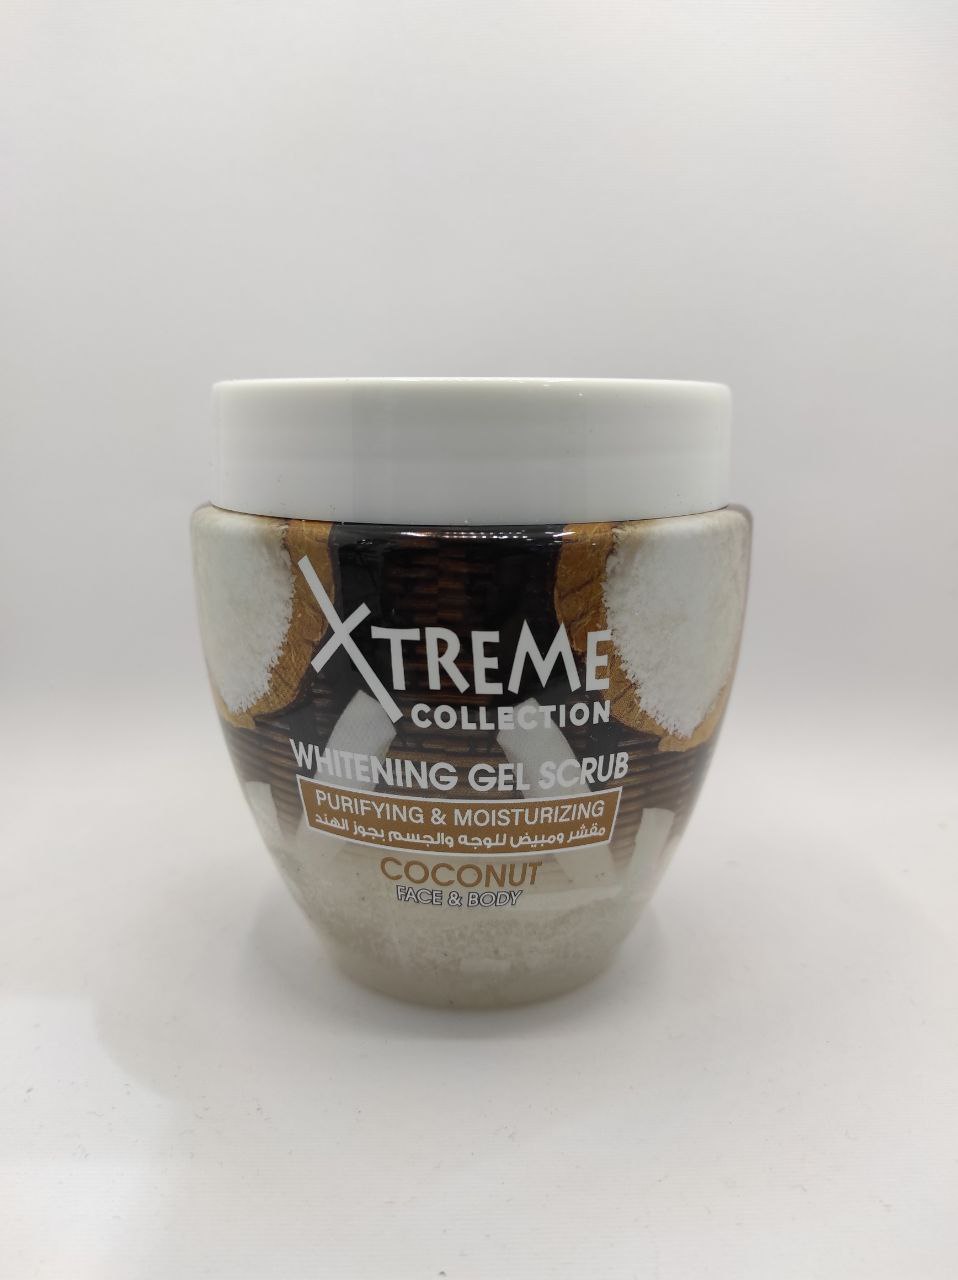 ژل اسکراب سفیدکننده نارگیل اکستریم xtreme whitening gel scrub coconut